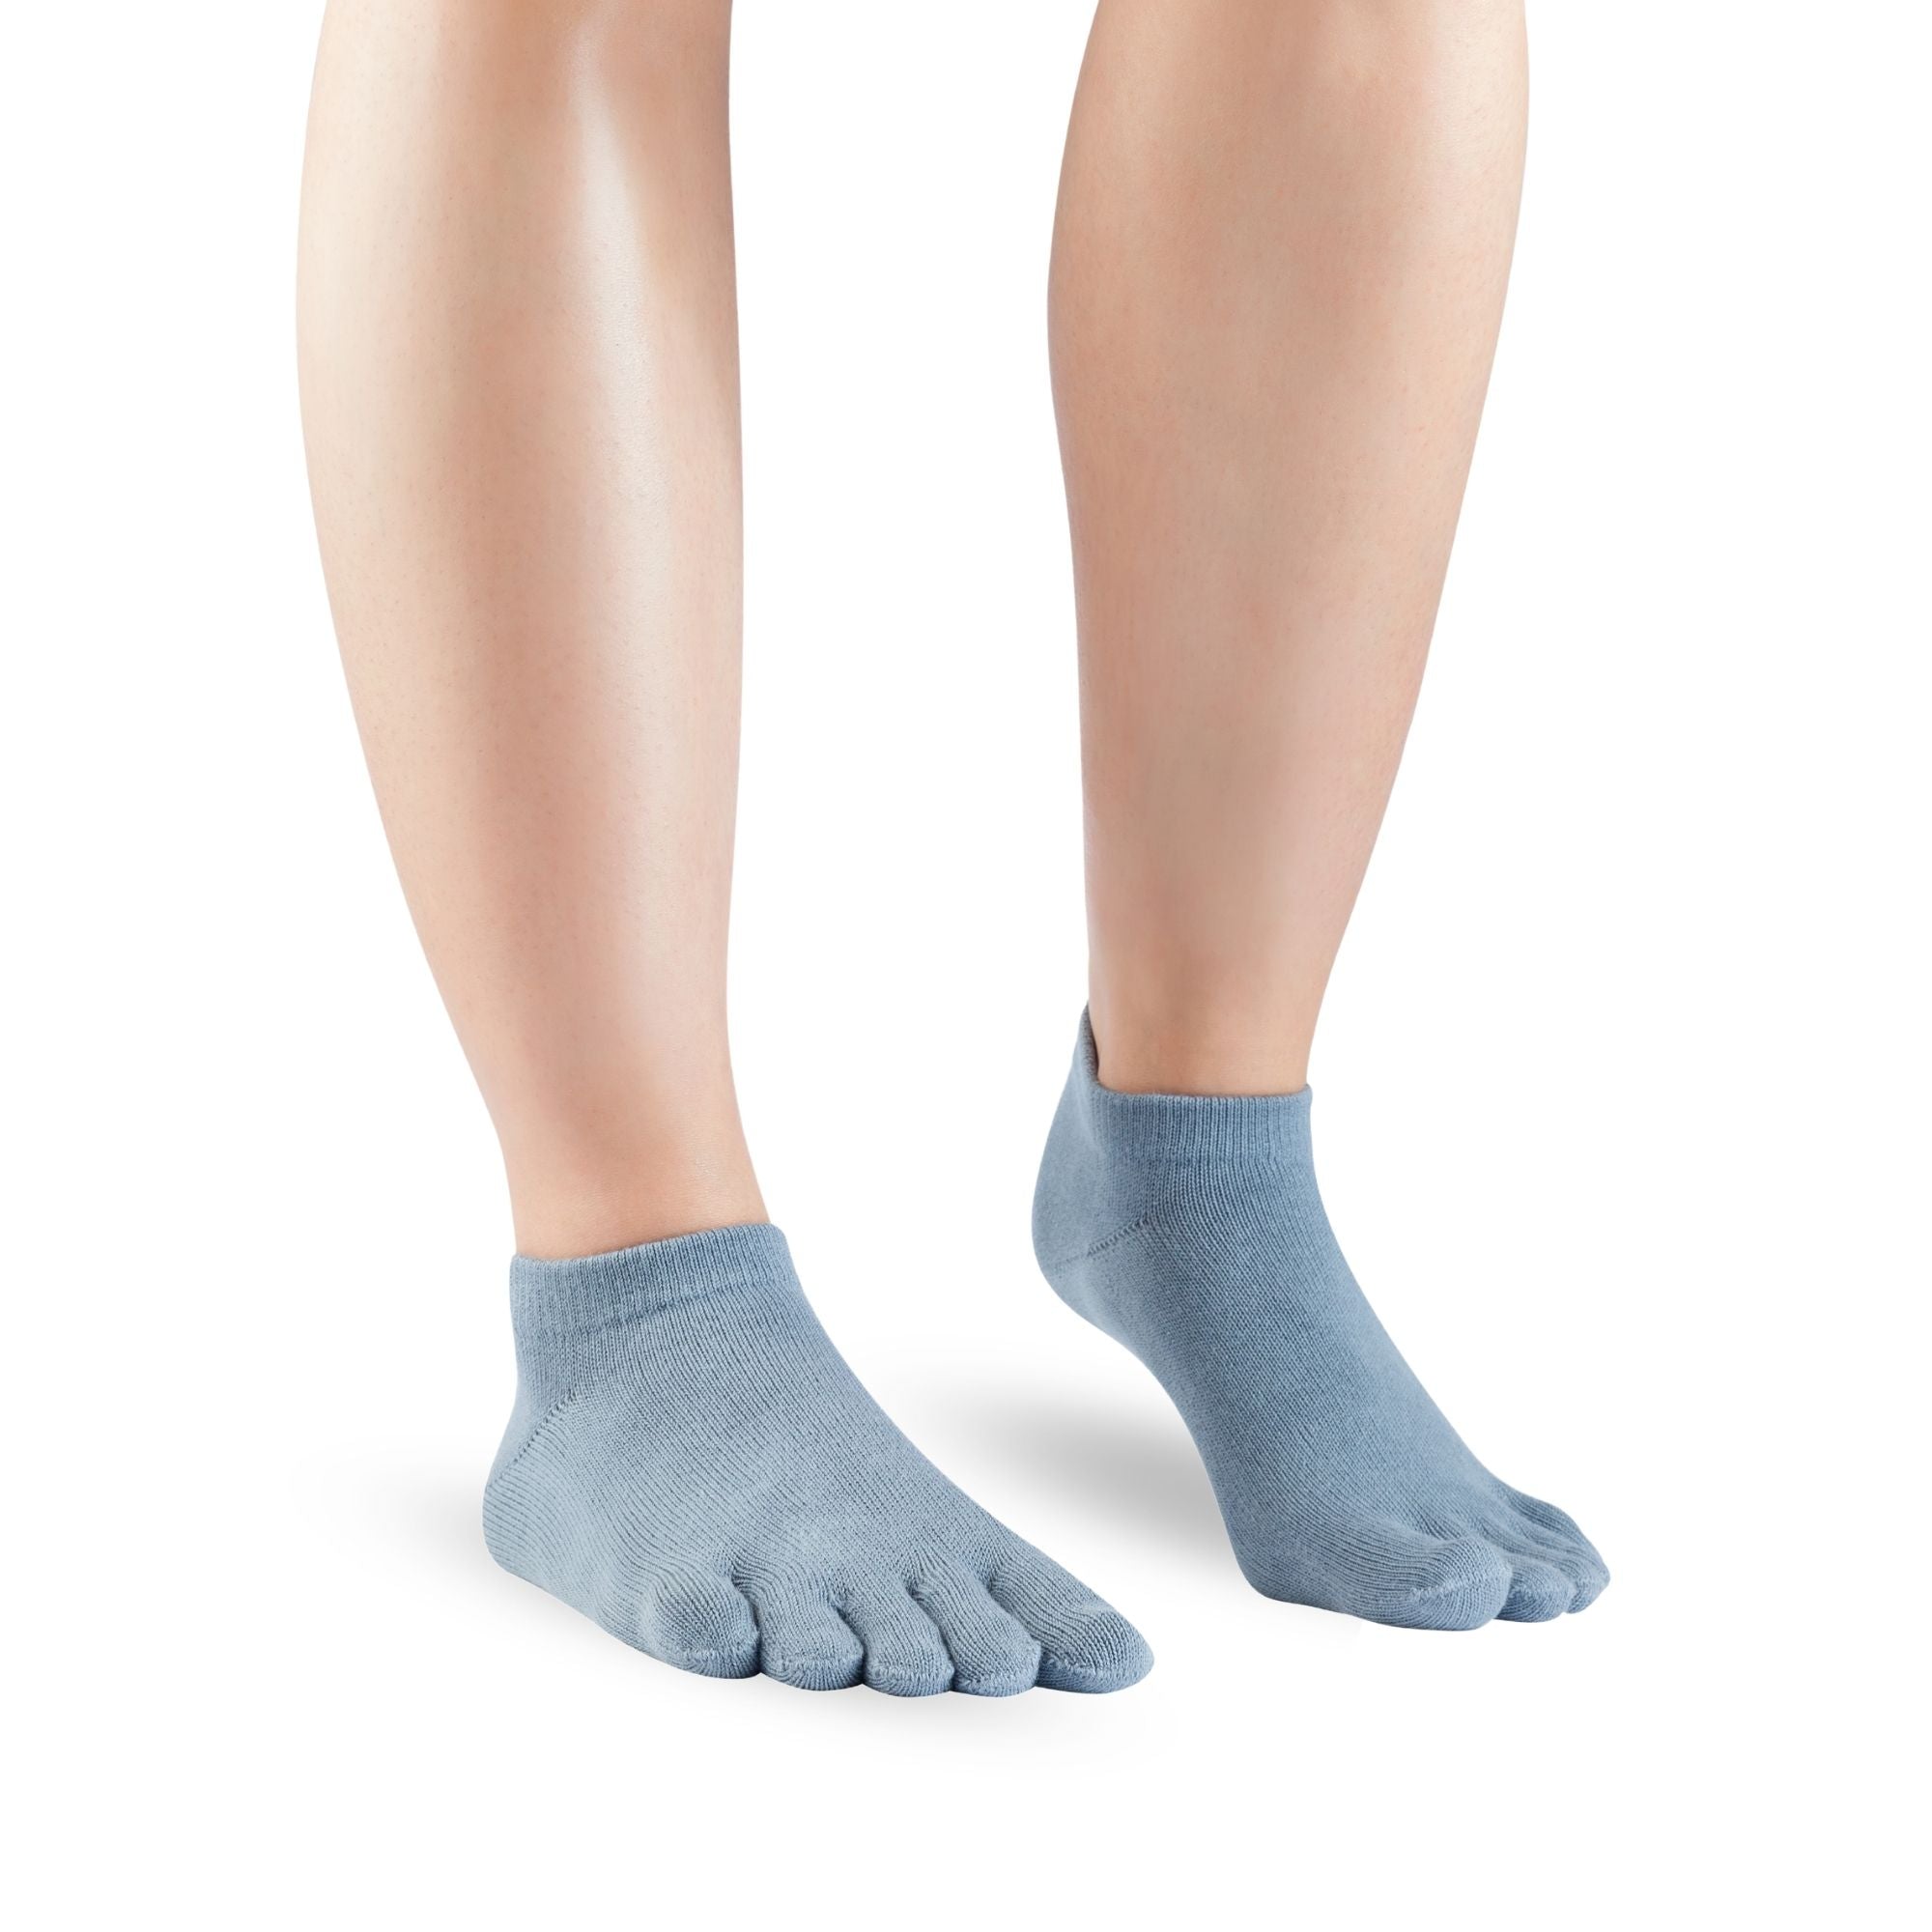 Knitido Essentials Long White - Calzado Barefoot